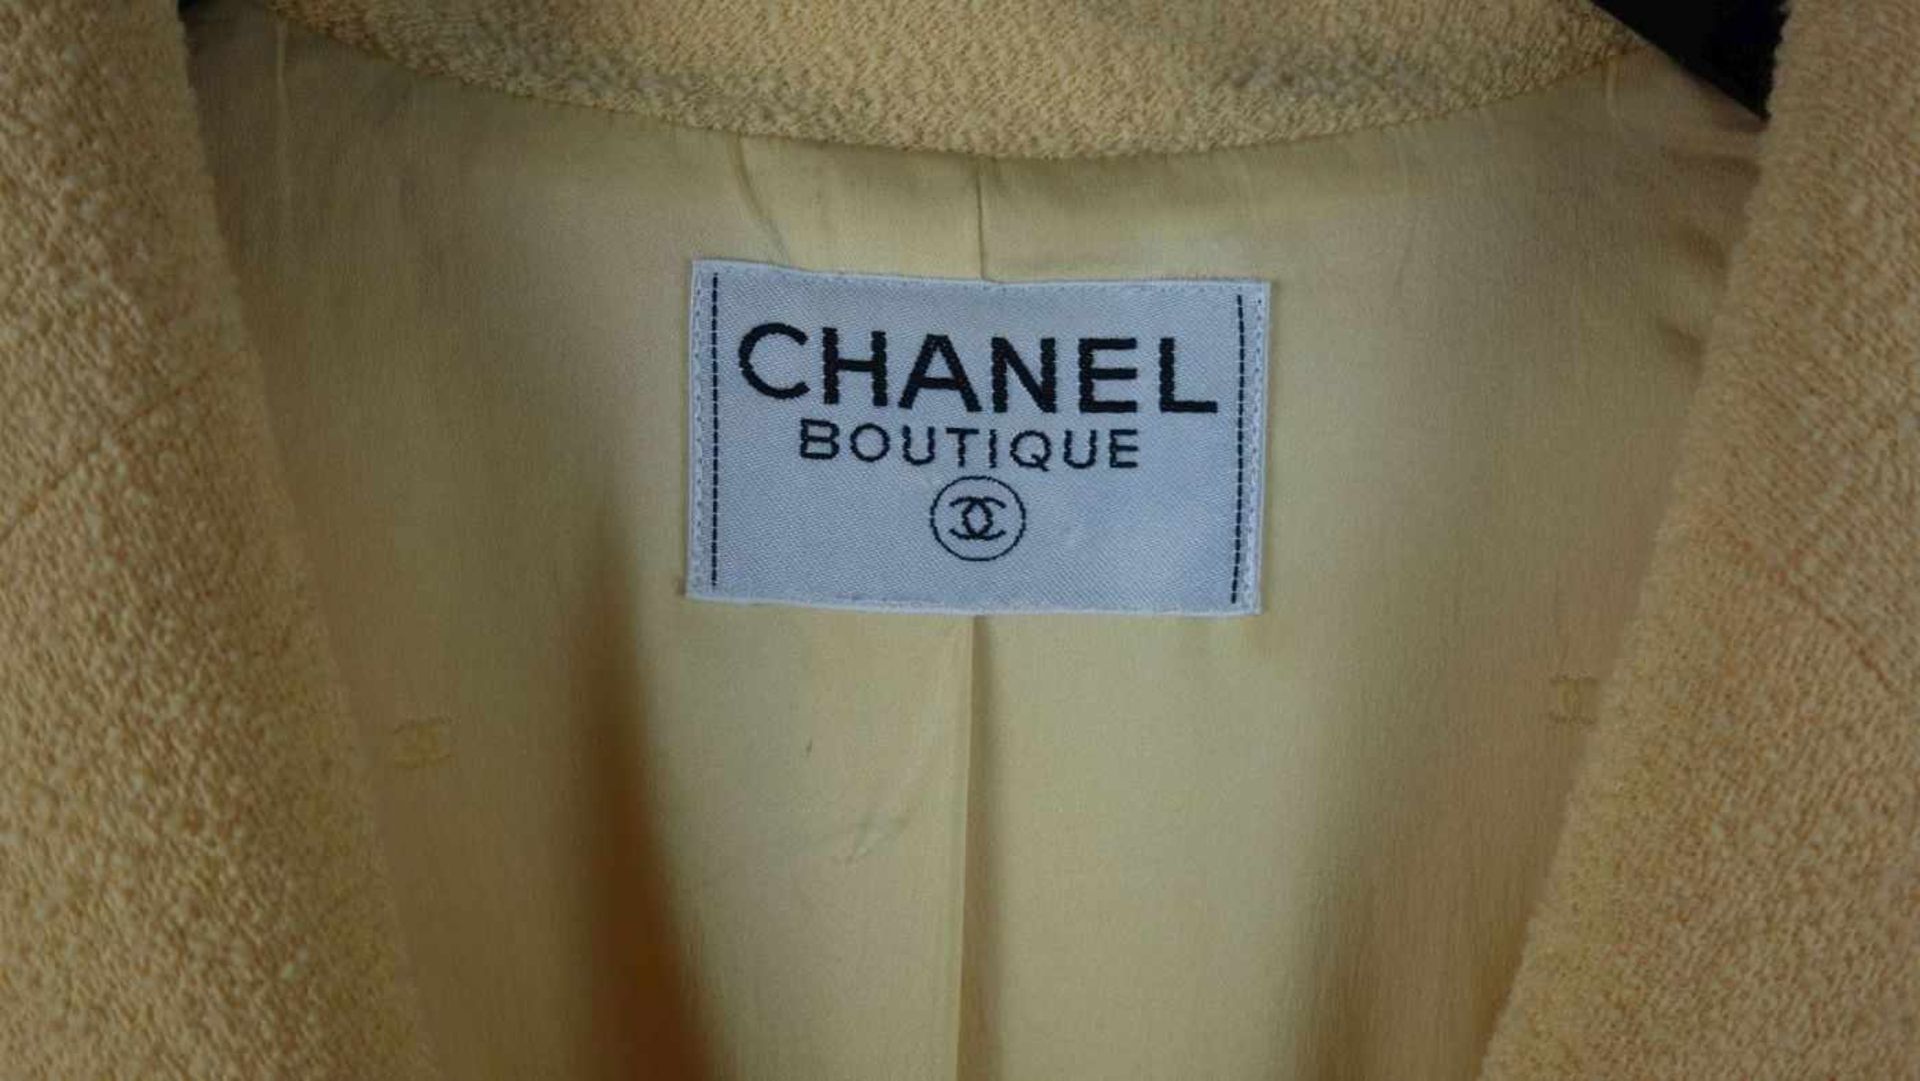 CHANEL DESIGNER BOUCLÉ KURZJACKE / BLAZER, Manufaktur Chanel / Paris. Innen auf Etikett - Bild 2 aus 7